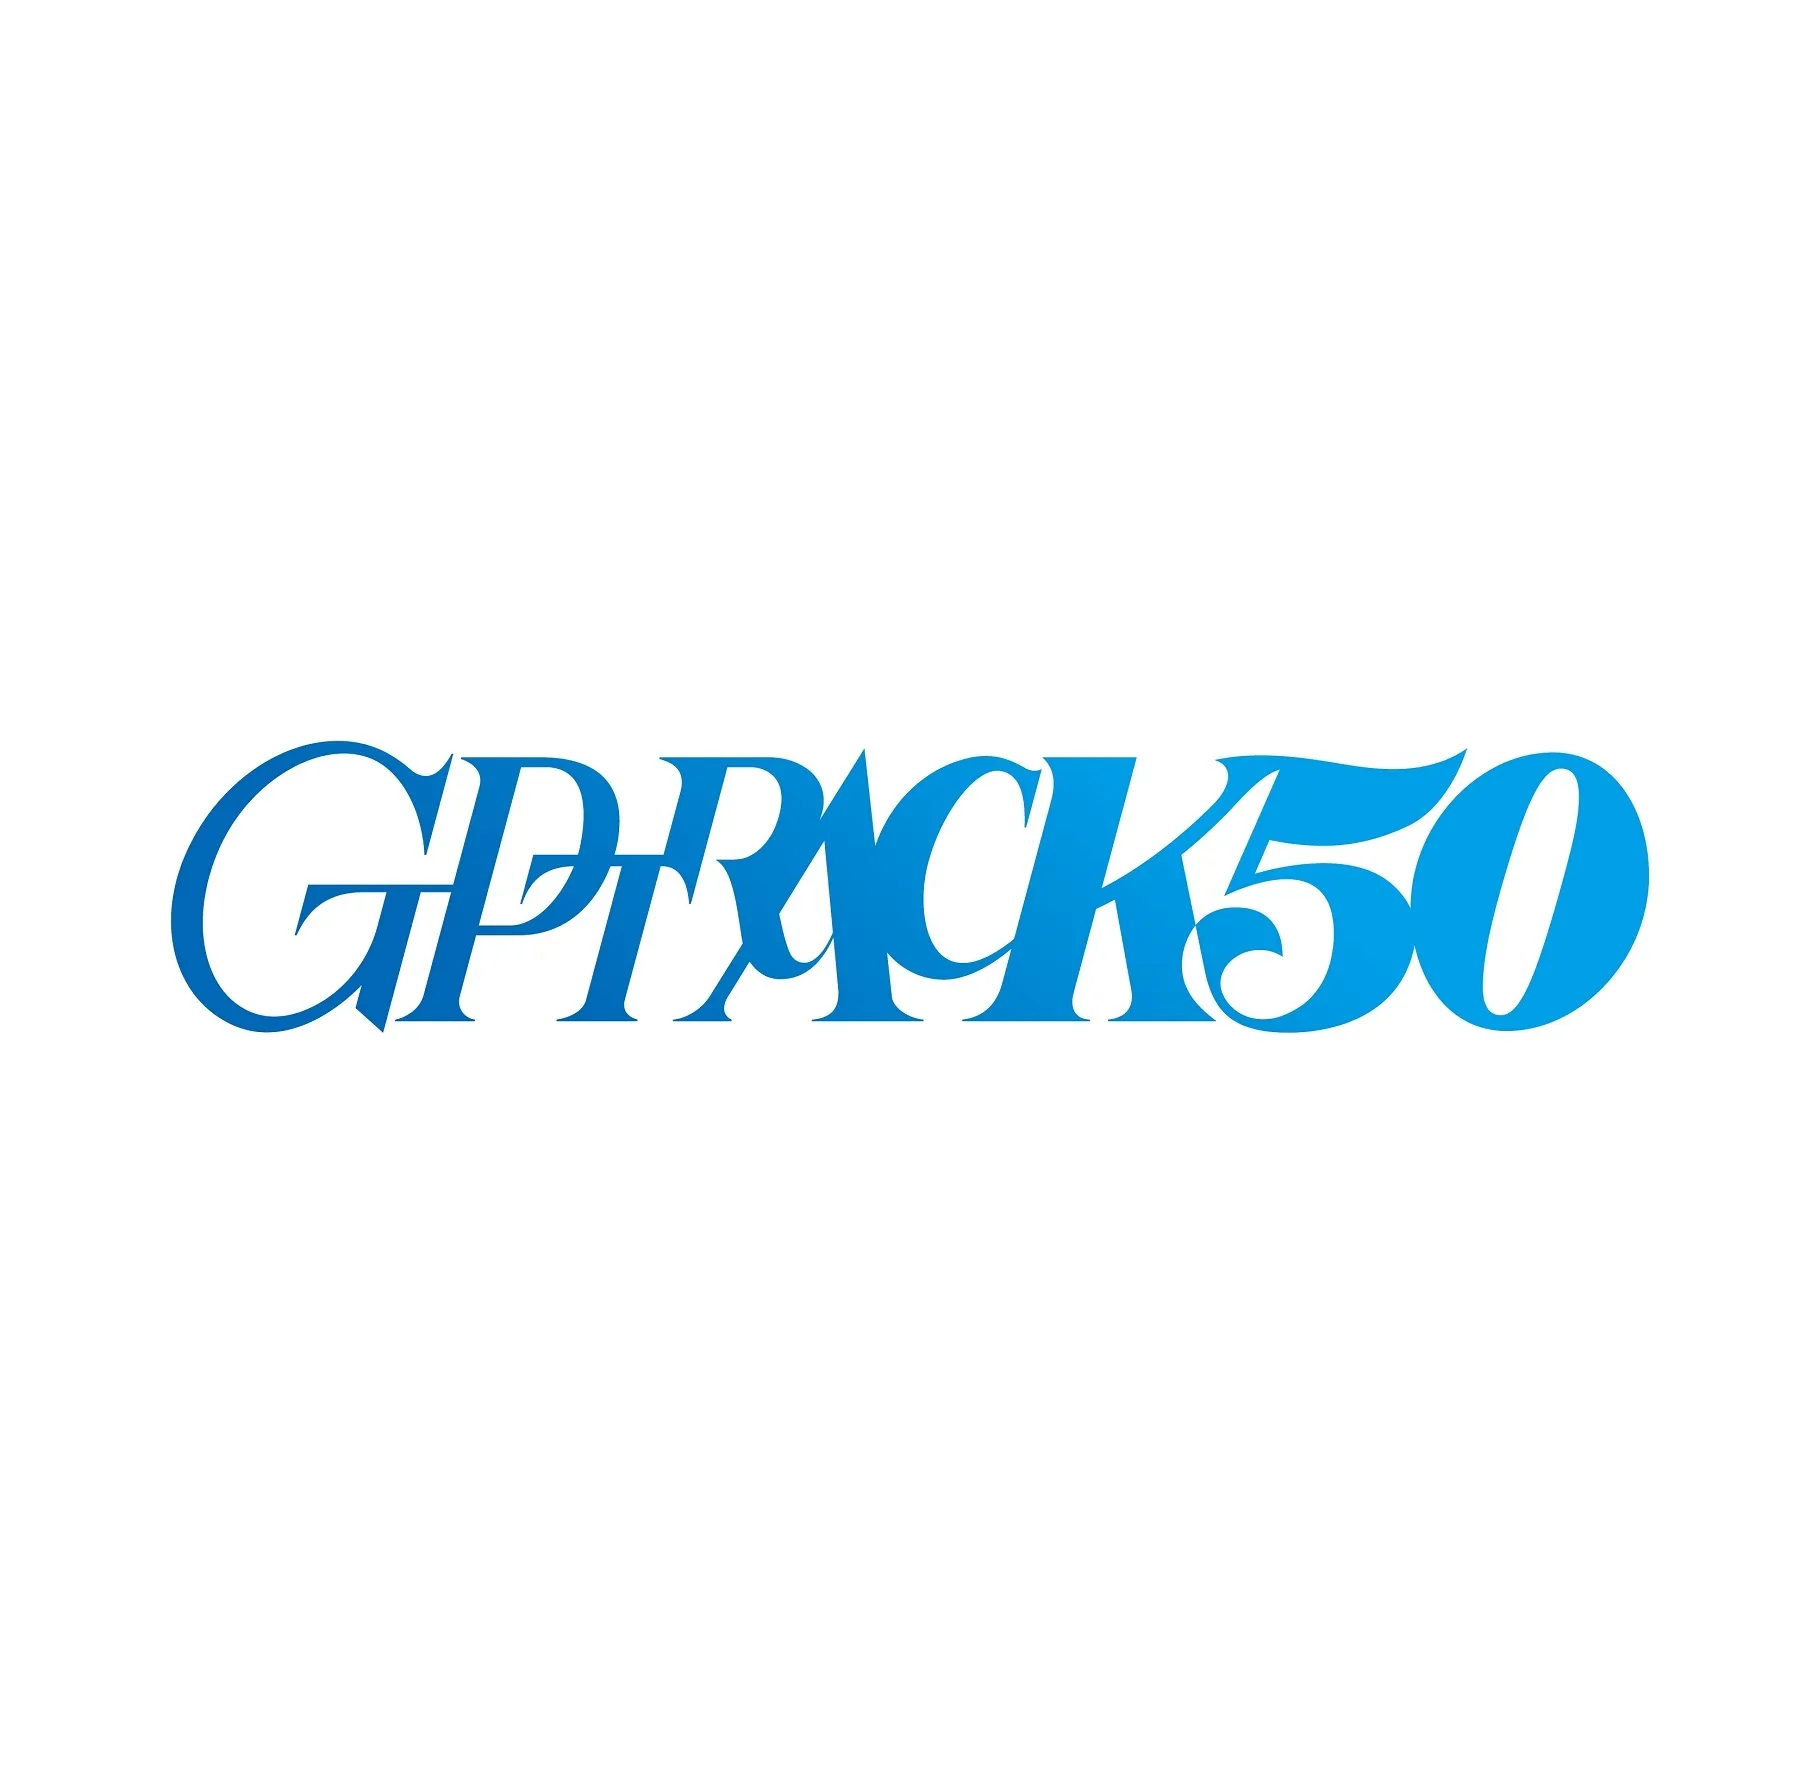 網易在日本成立原創遊戲開發工作室「GPTRACK50」，小林裕幸擔任社長